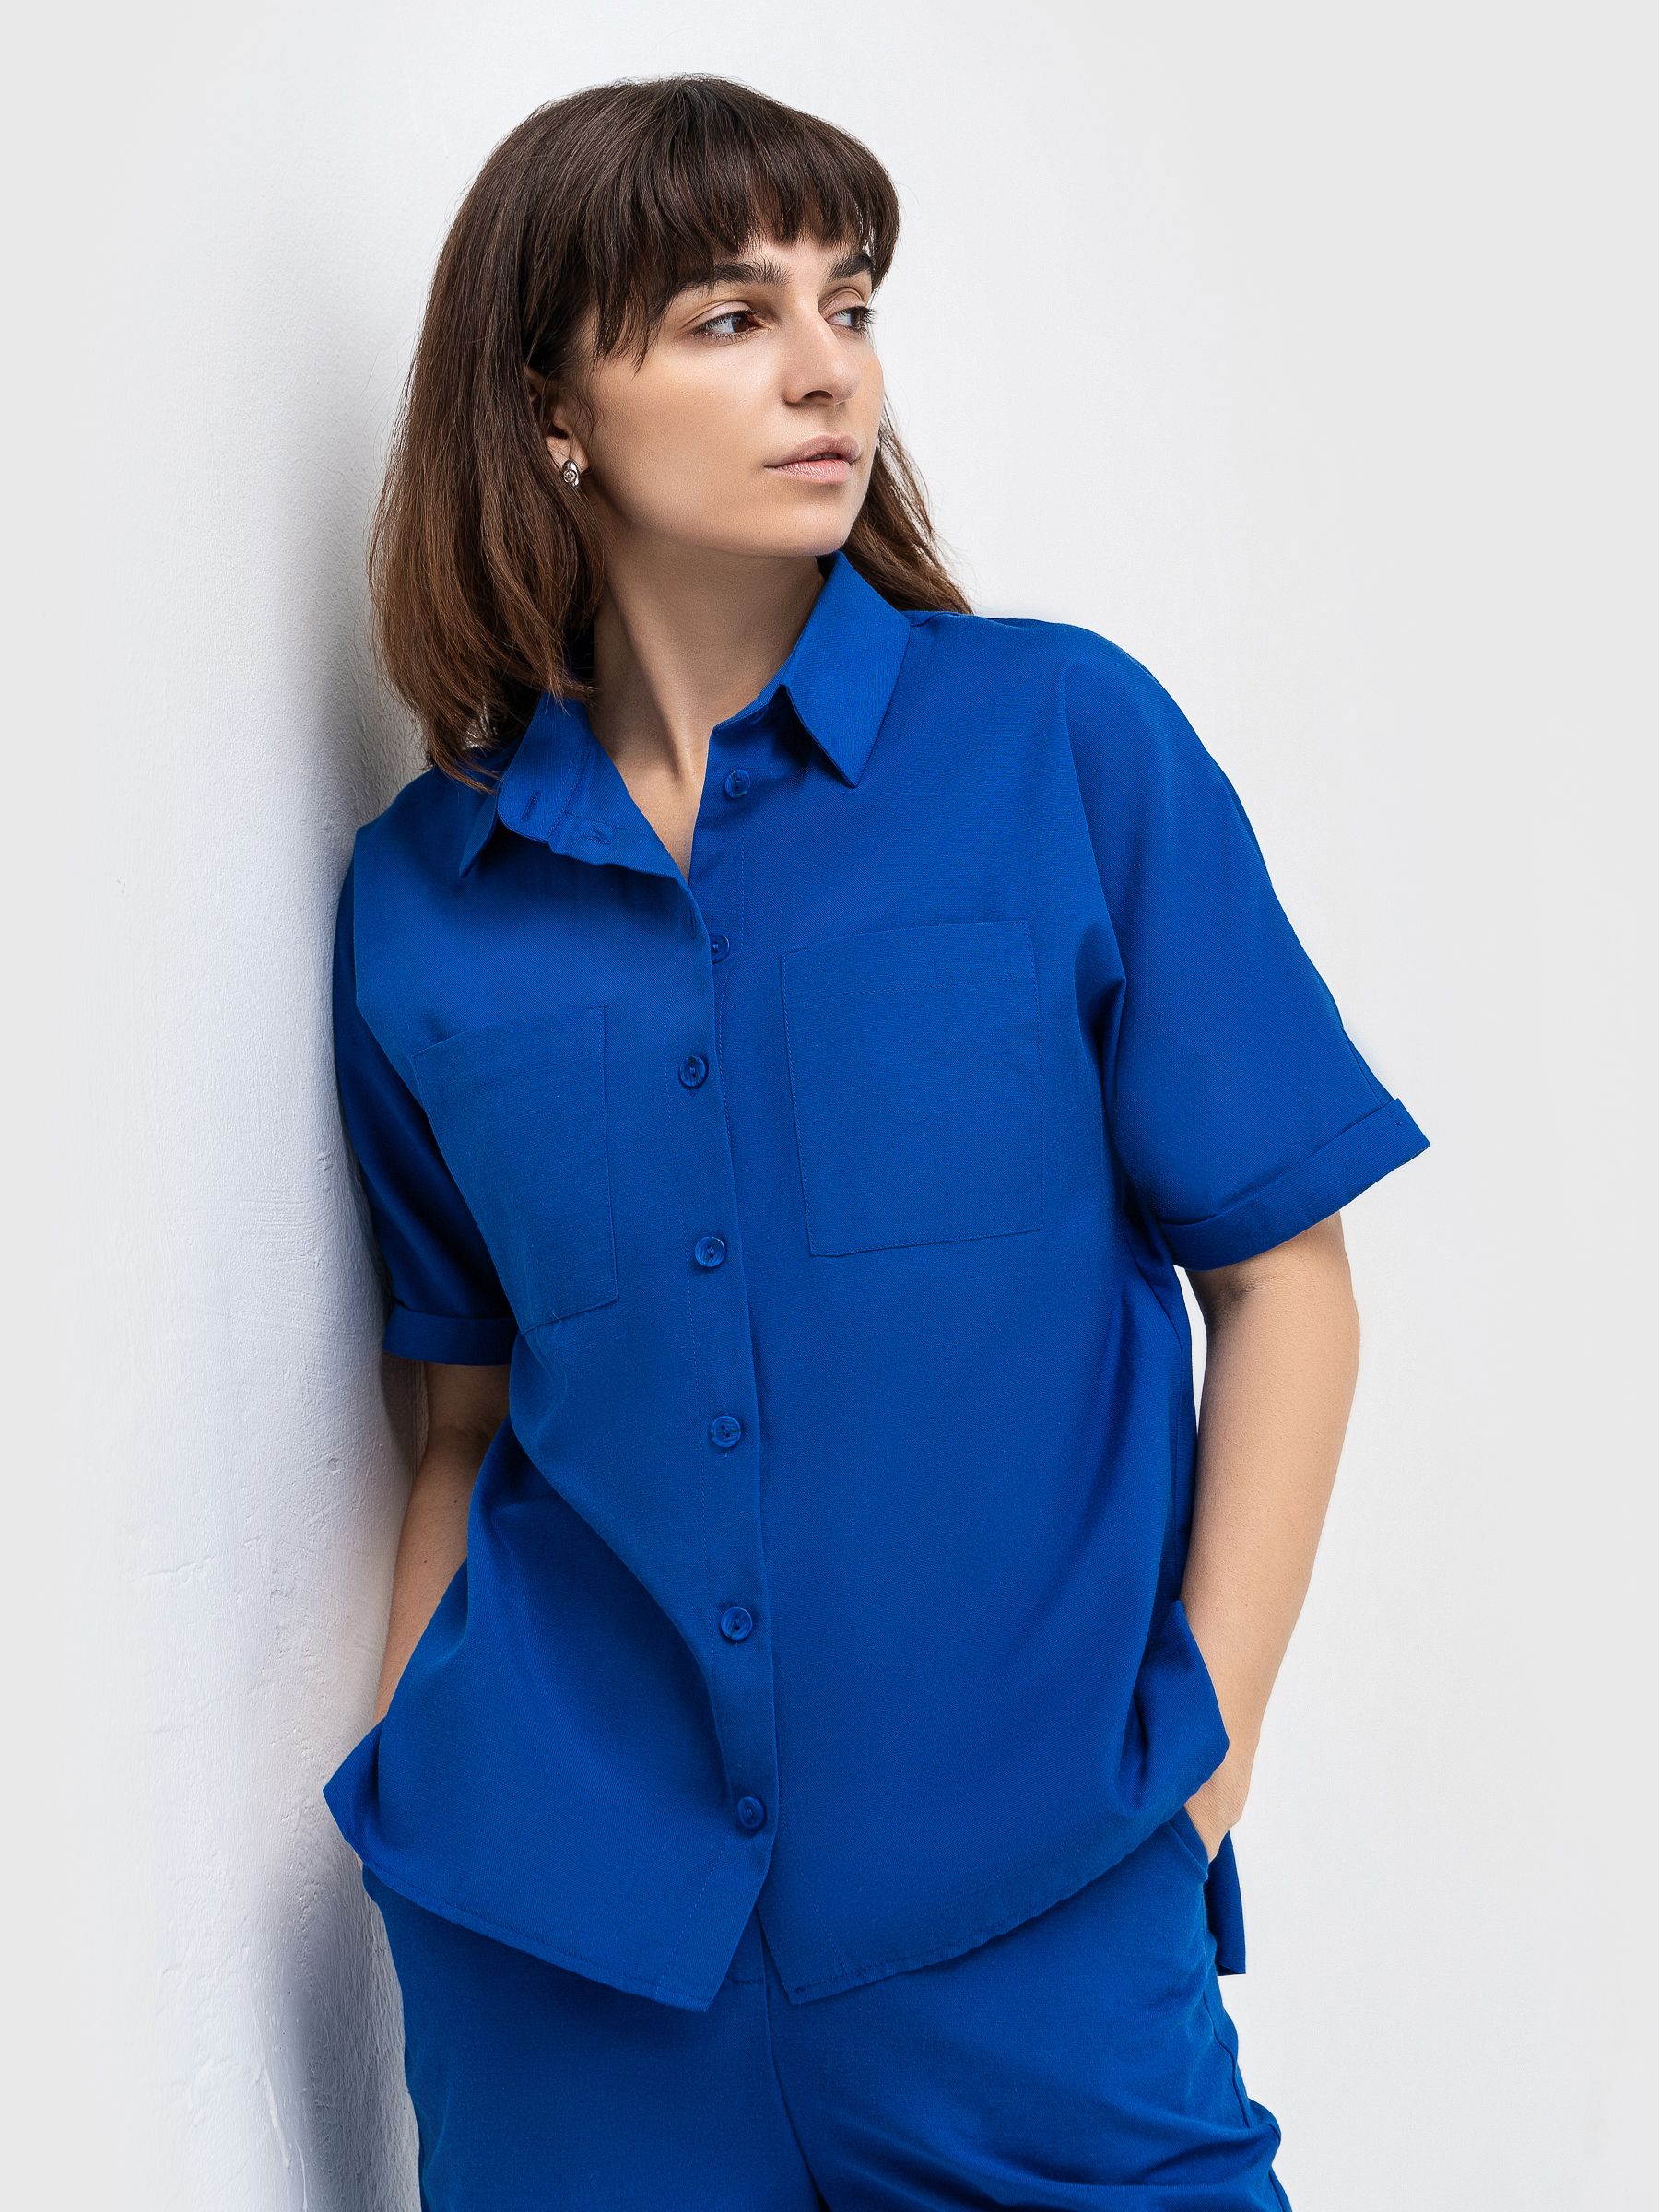 Рубашка женская AM One 1453/1 синяя 46 RU